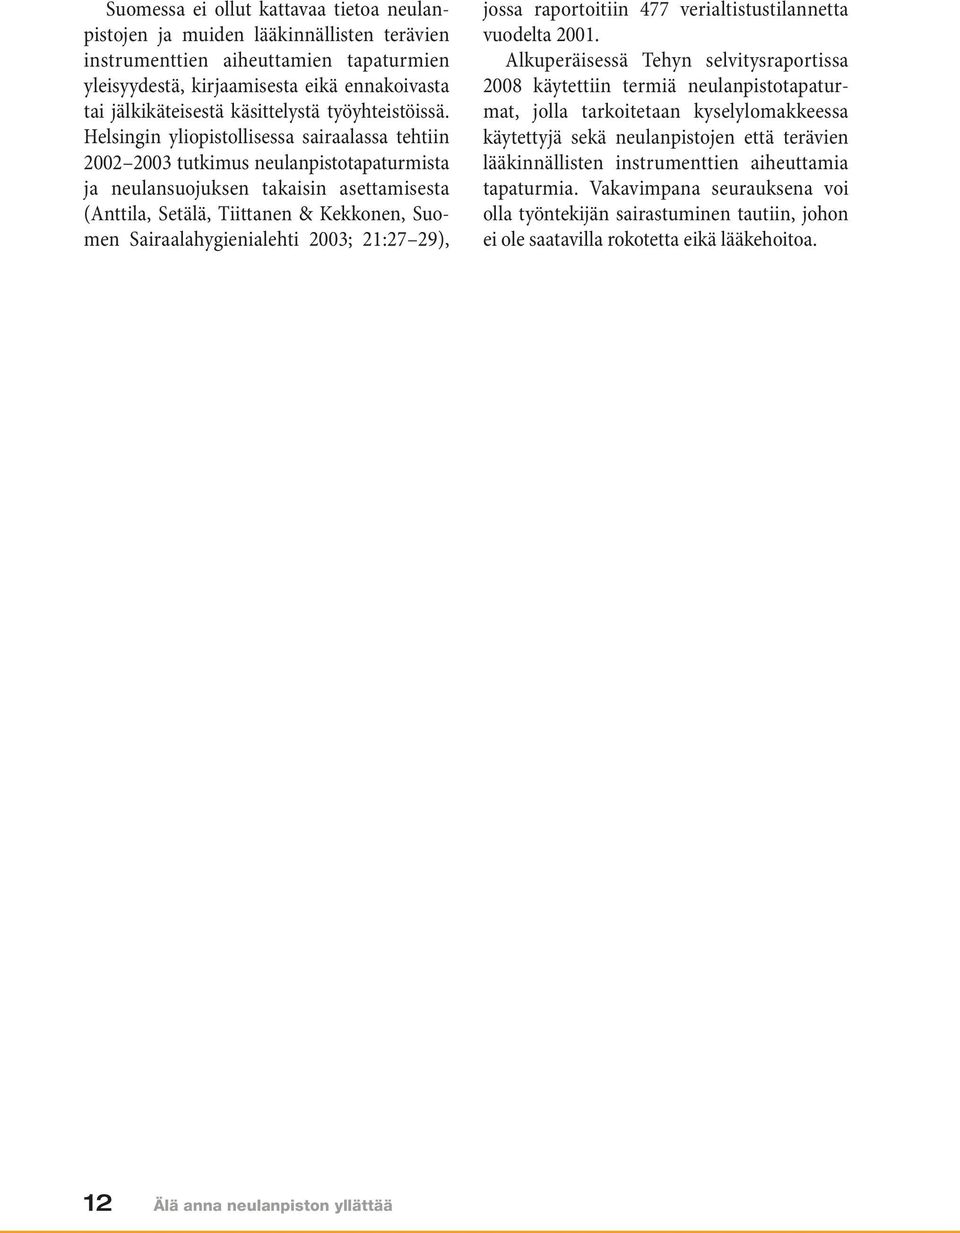 Helsingin yliopistollisessa sairaalassa tehtiin 2002 2003 tutkimus neulanpistotapaturmista ja neulansuojuksen takaisin asettamisesta (Anttila, Setälä, Tiittanen & Kekkonen, Suomen